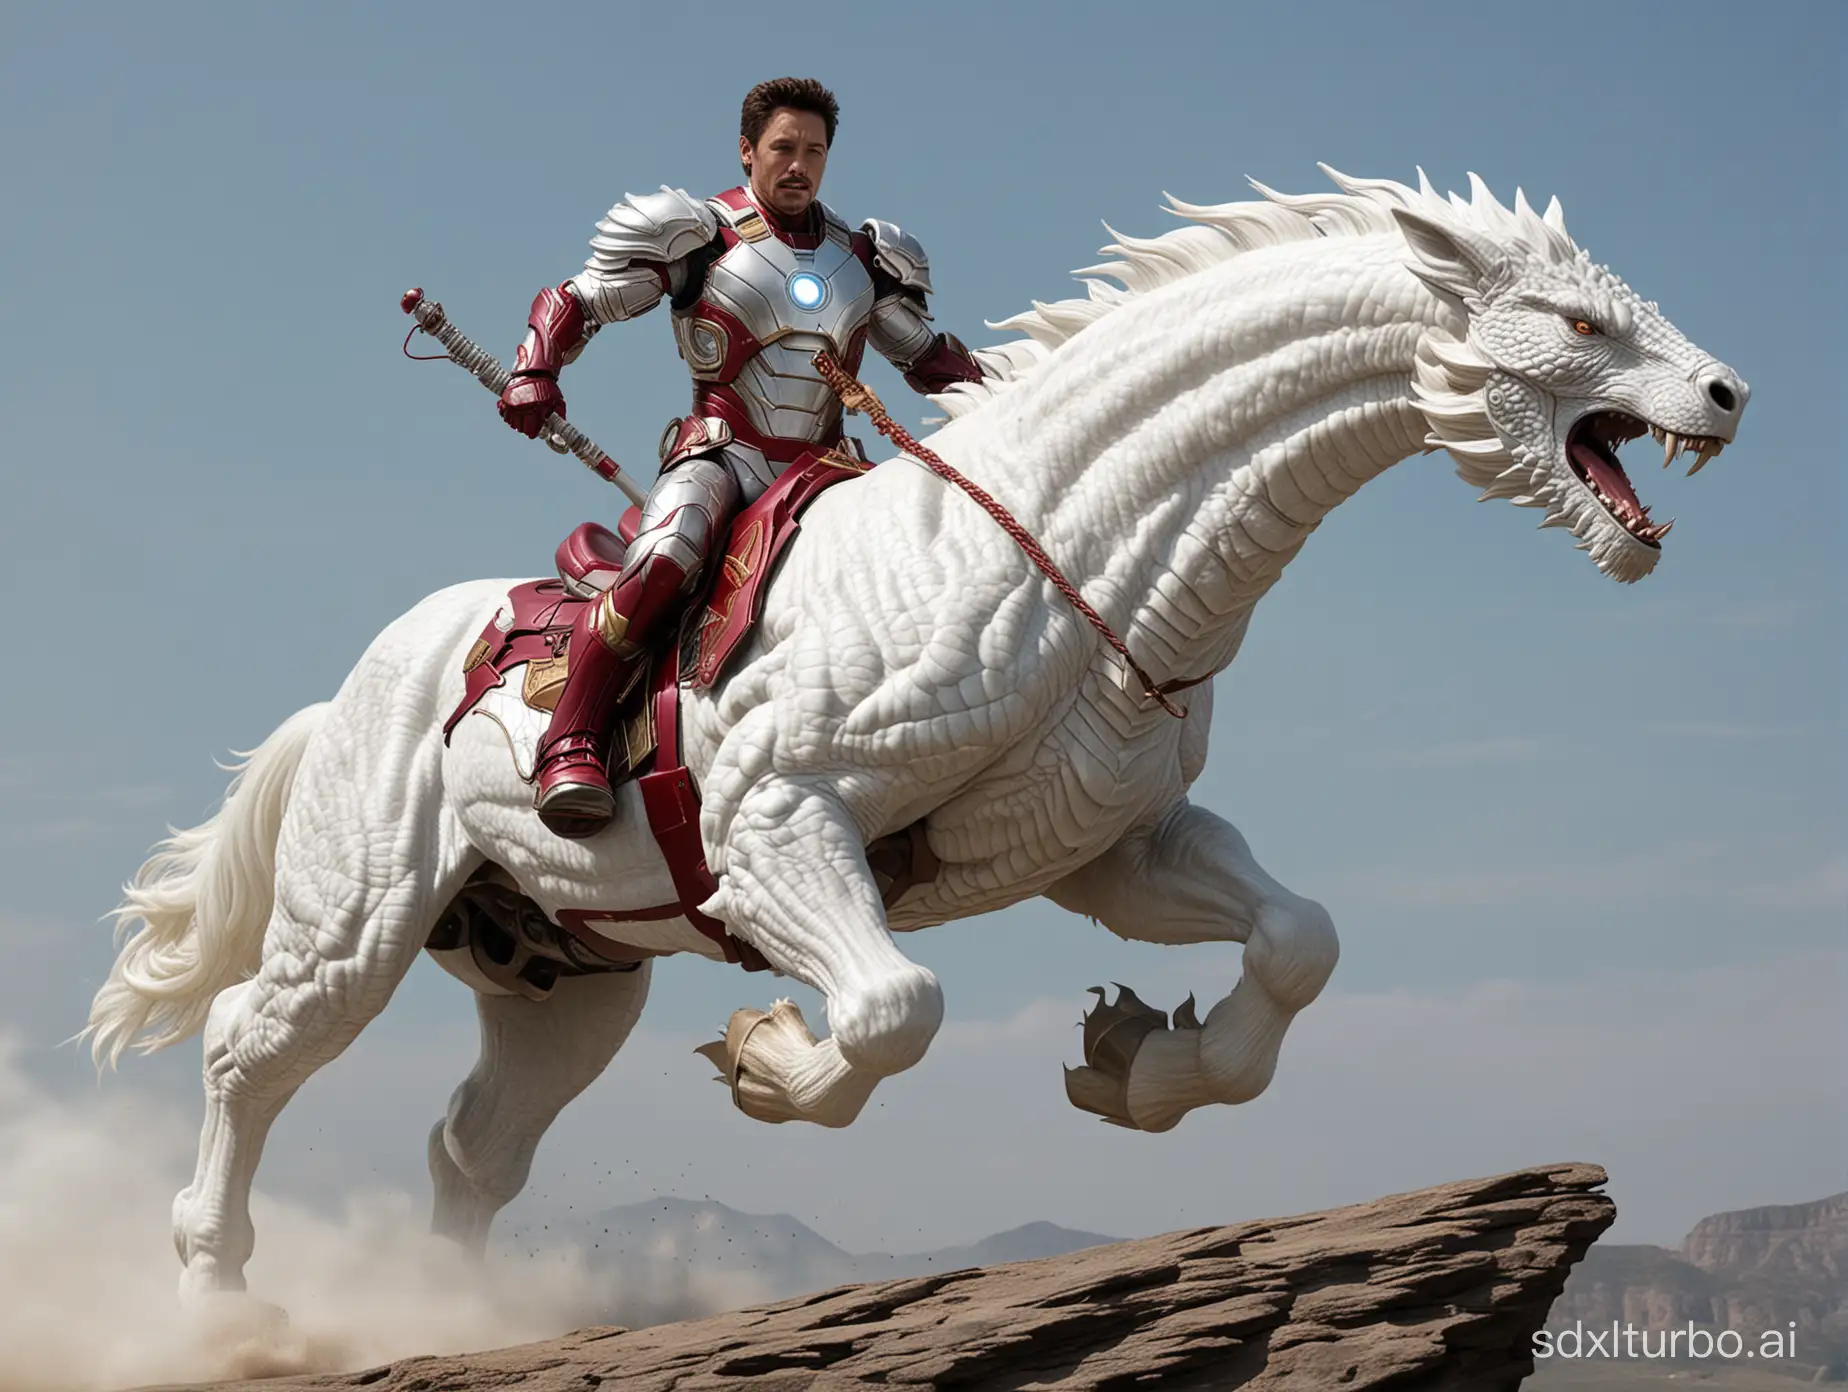 Riding the white dragon horse Iron Man